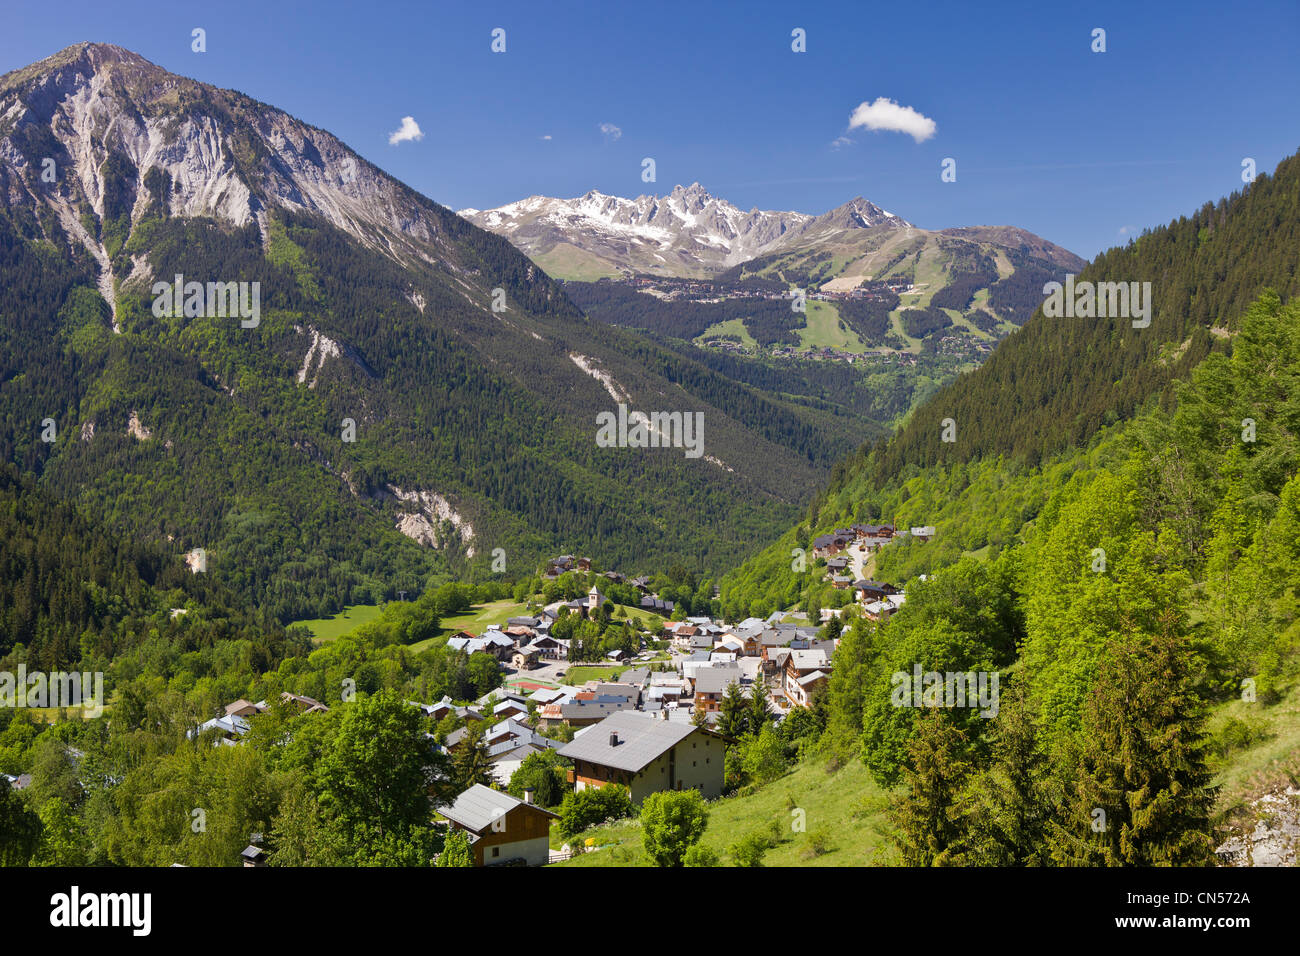 France, Savoie, Champagny en Vanoise, seen on Courchevel and the le Sommet de La Saulire summit (2738m), Massif de la Vanoise, Stock Photo